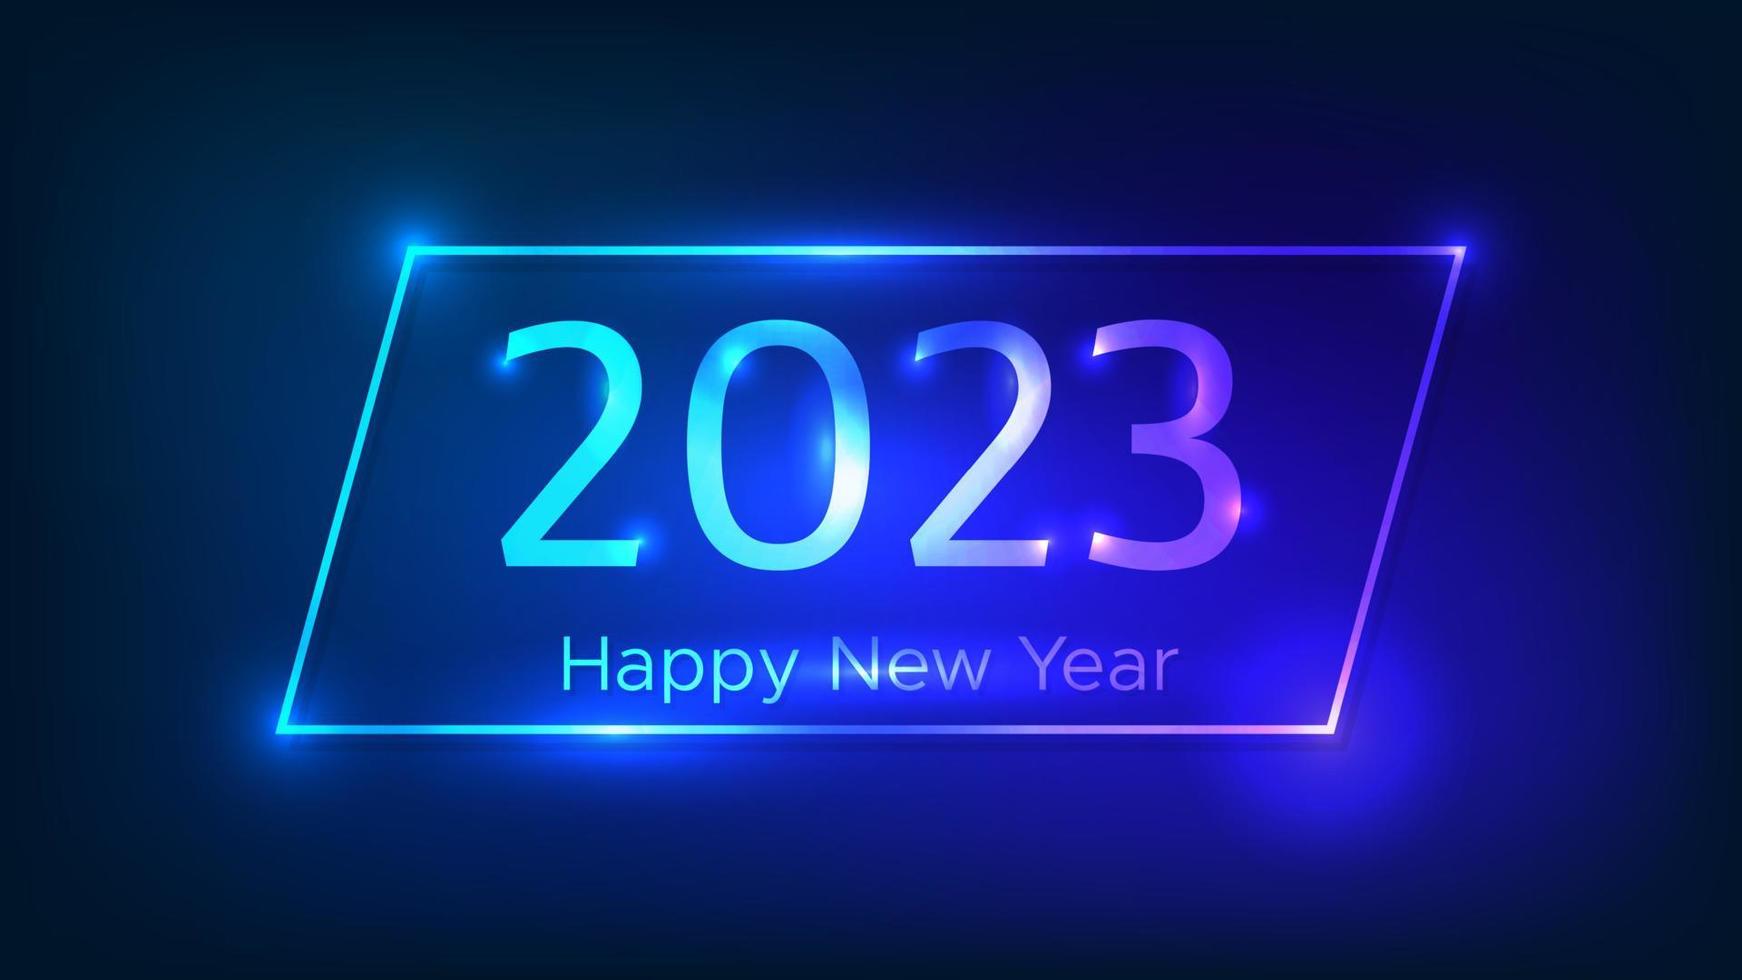 Bonne année 2023 fond néon. cadre rectangulaire néon avec effets brillants pour carte de voeux, flyers ou affiches de vacances de noël. illustration vectorielle vecteur